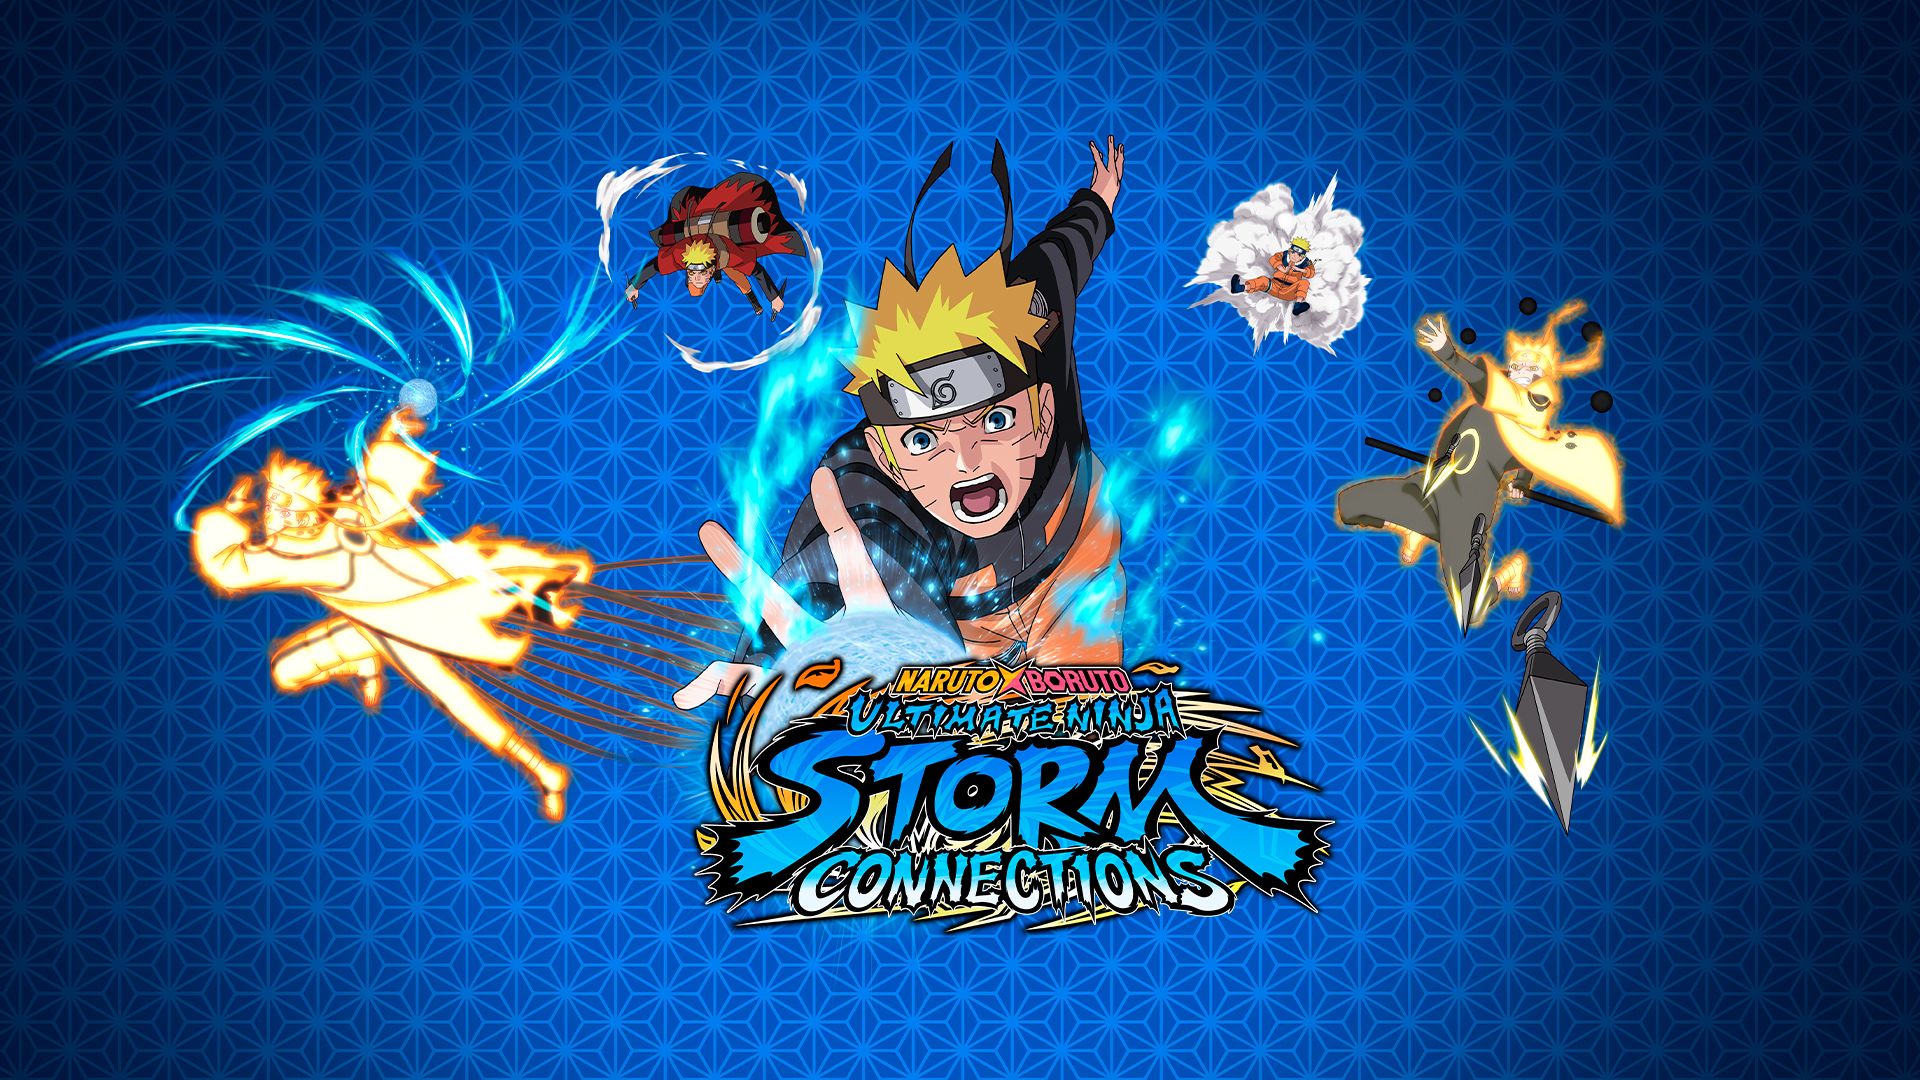 Naruto x Boruto Ultimate Ninja Storm Connections game: New trailer